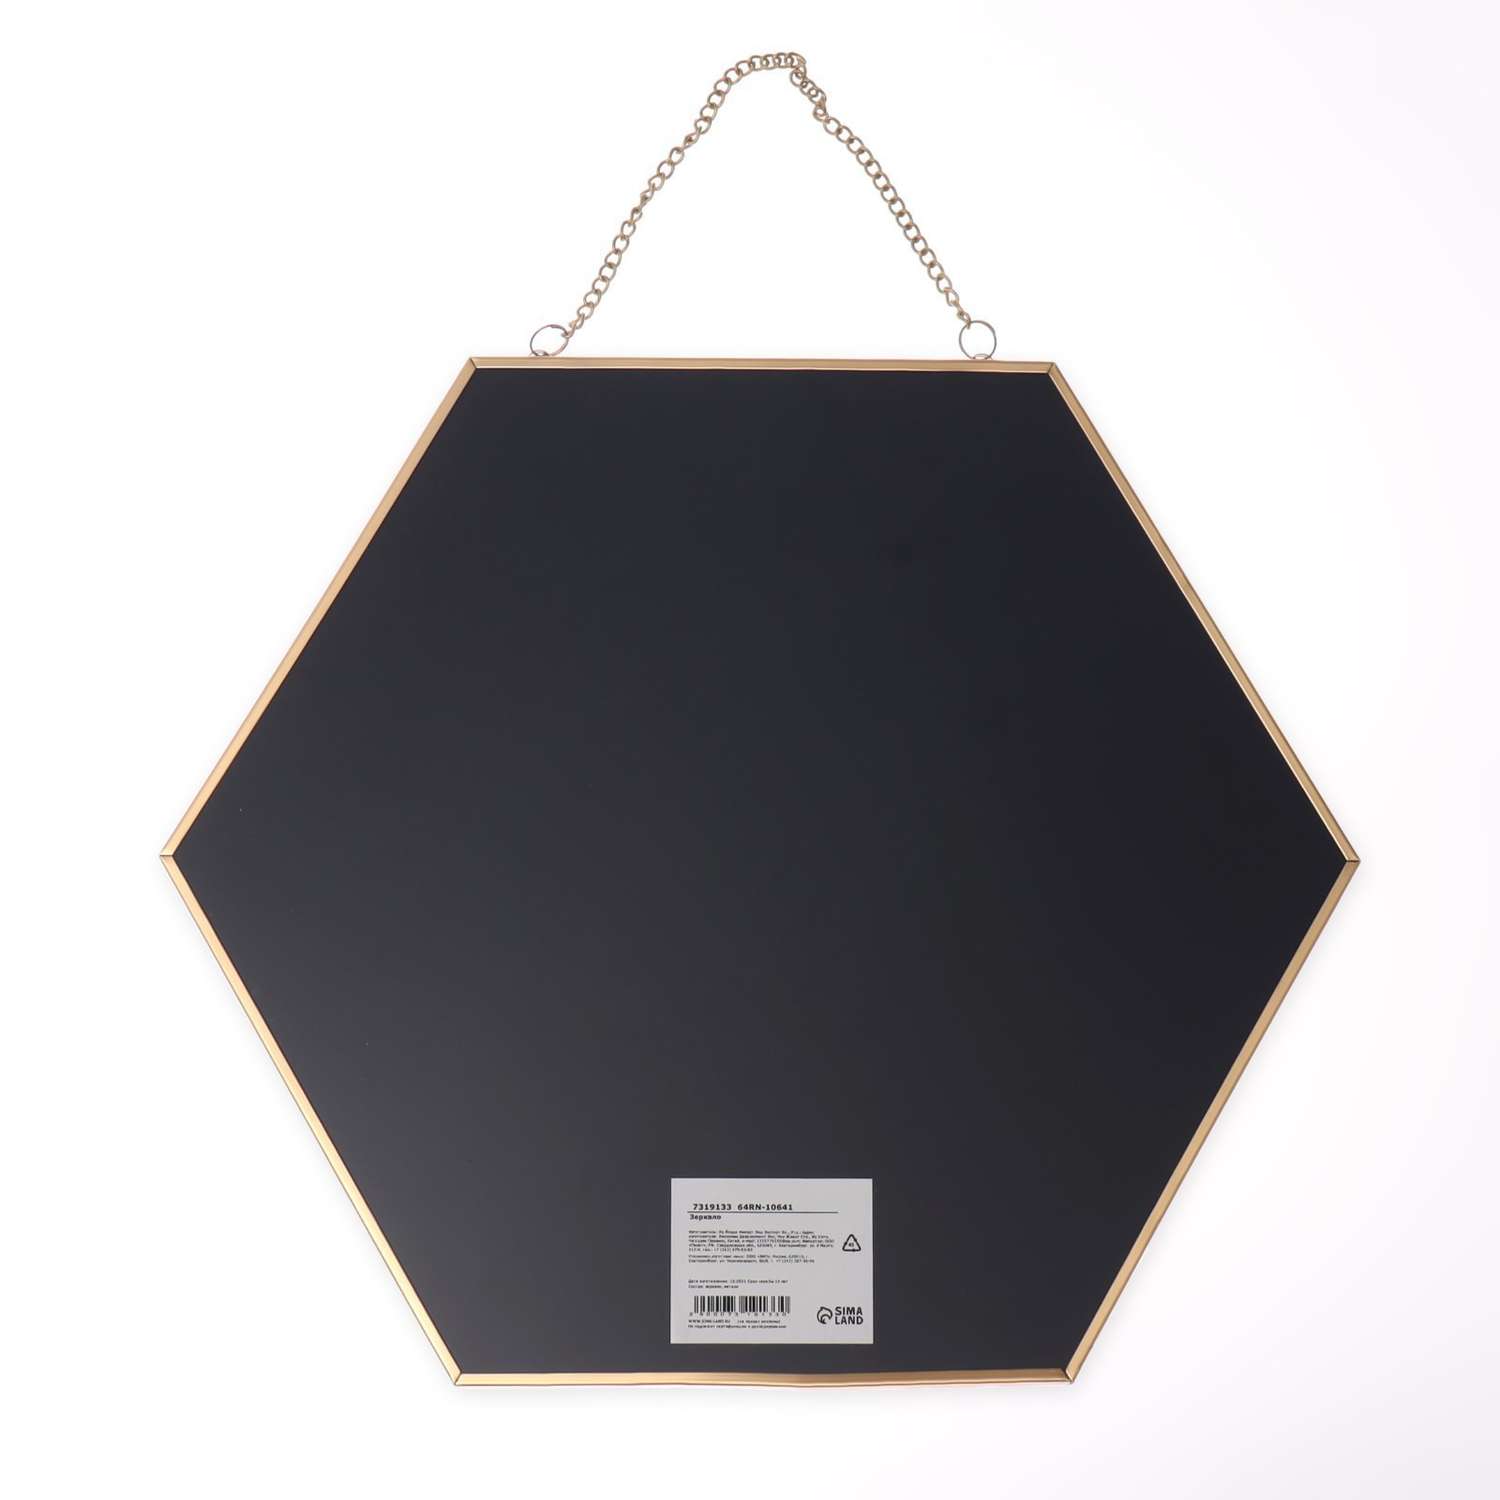 Зеркало Queen fair настенное «Изящная геометрия» зеркальная поверхность 25 × 28 см цвет золотистый - фото 4